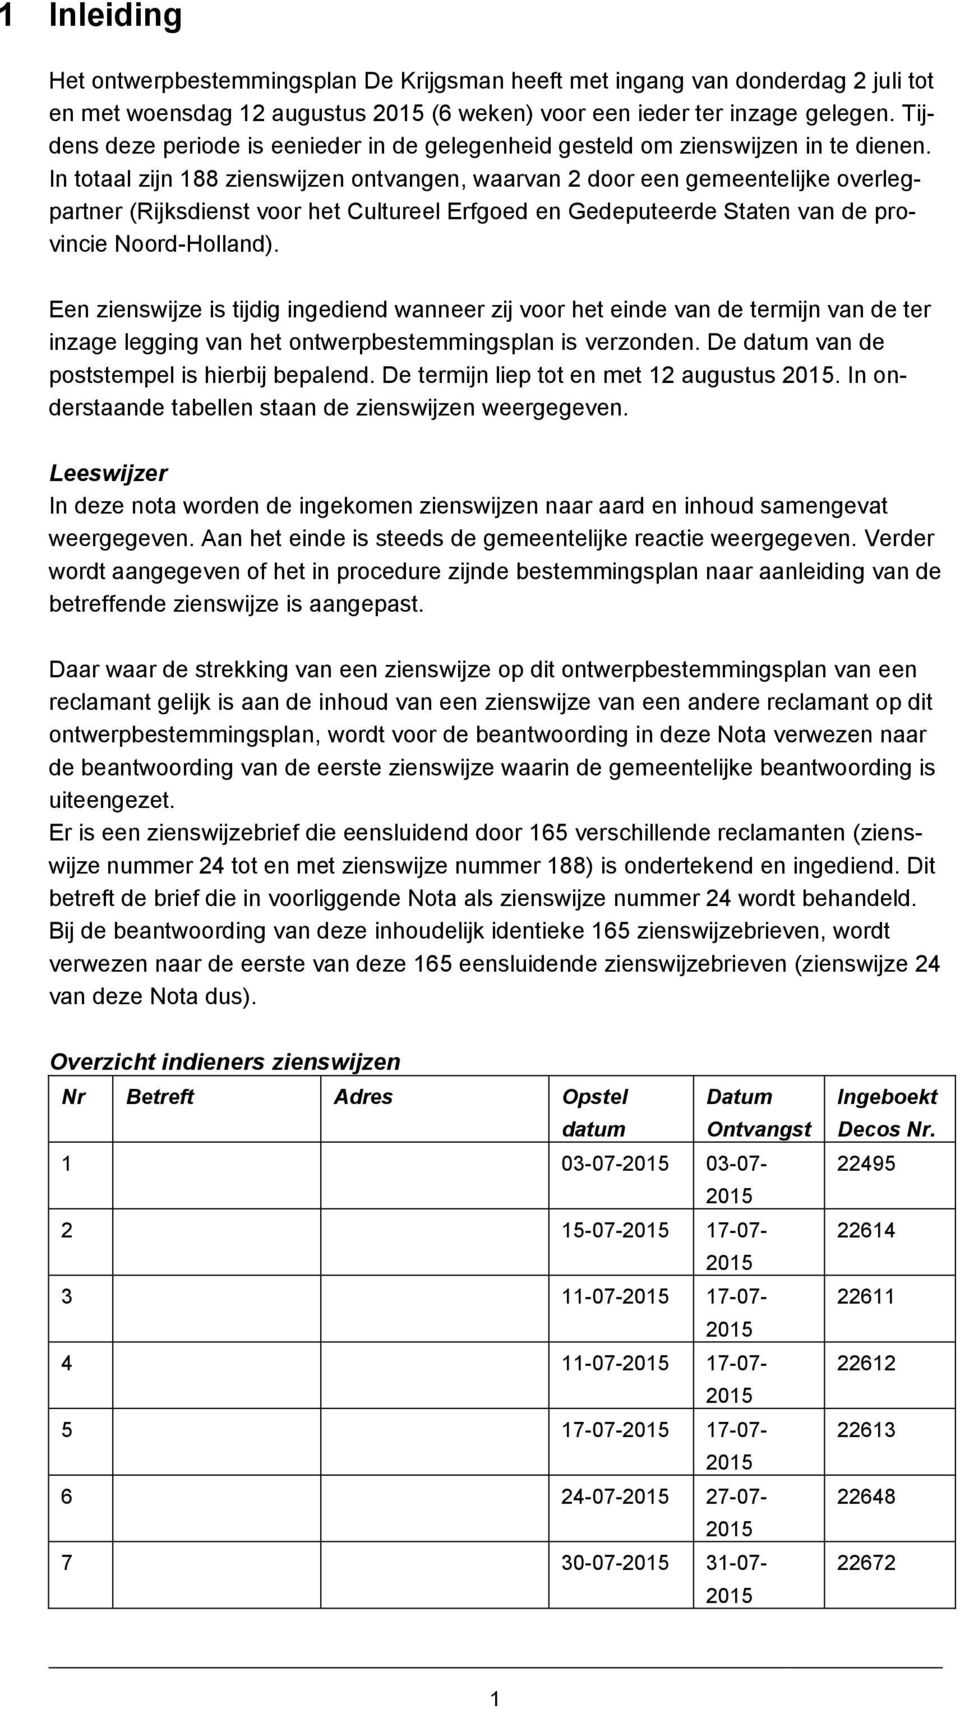 In totaal zijn 188 zienswijzen ontvangen, waarvan 2 door een gemeentelijke overlegpartner (Rijksdienst voor het Cultureel Erfgoed en Gedeputeerde Staten van de provincie Noord-Holland).